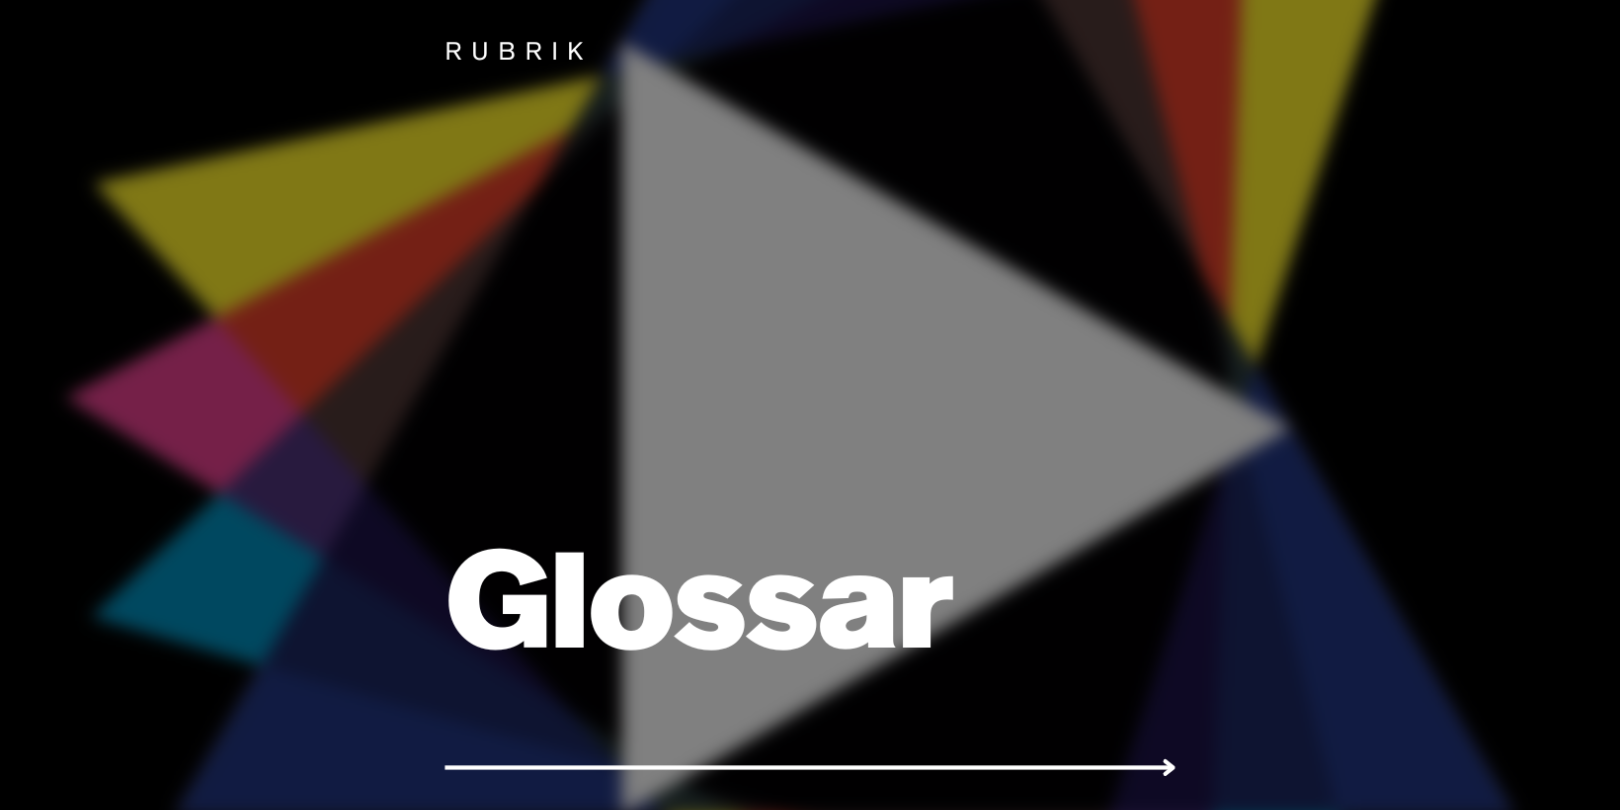 Glossar info chart